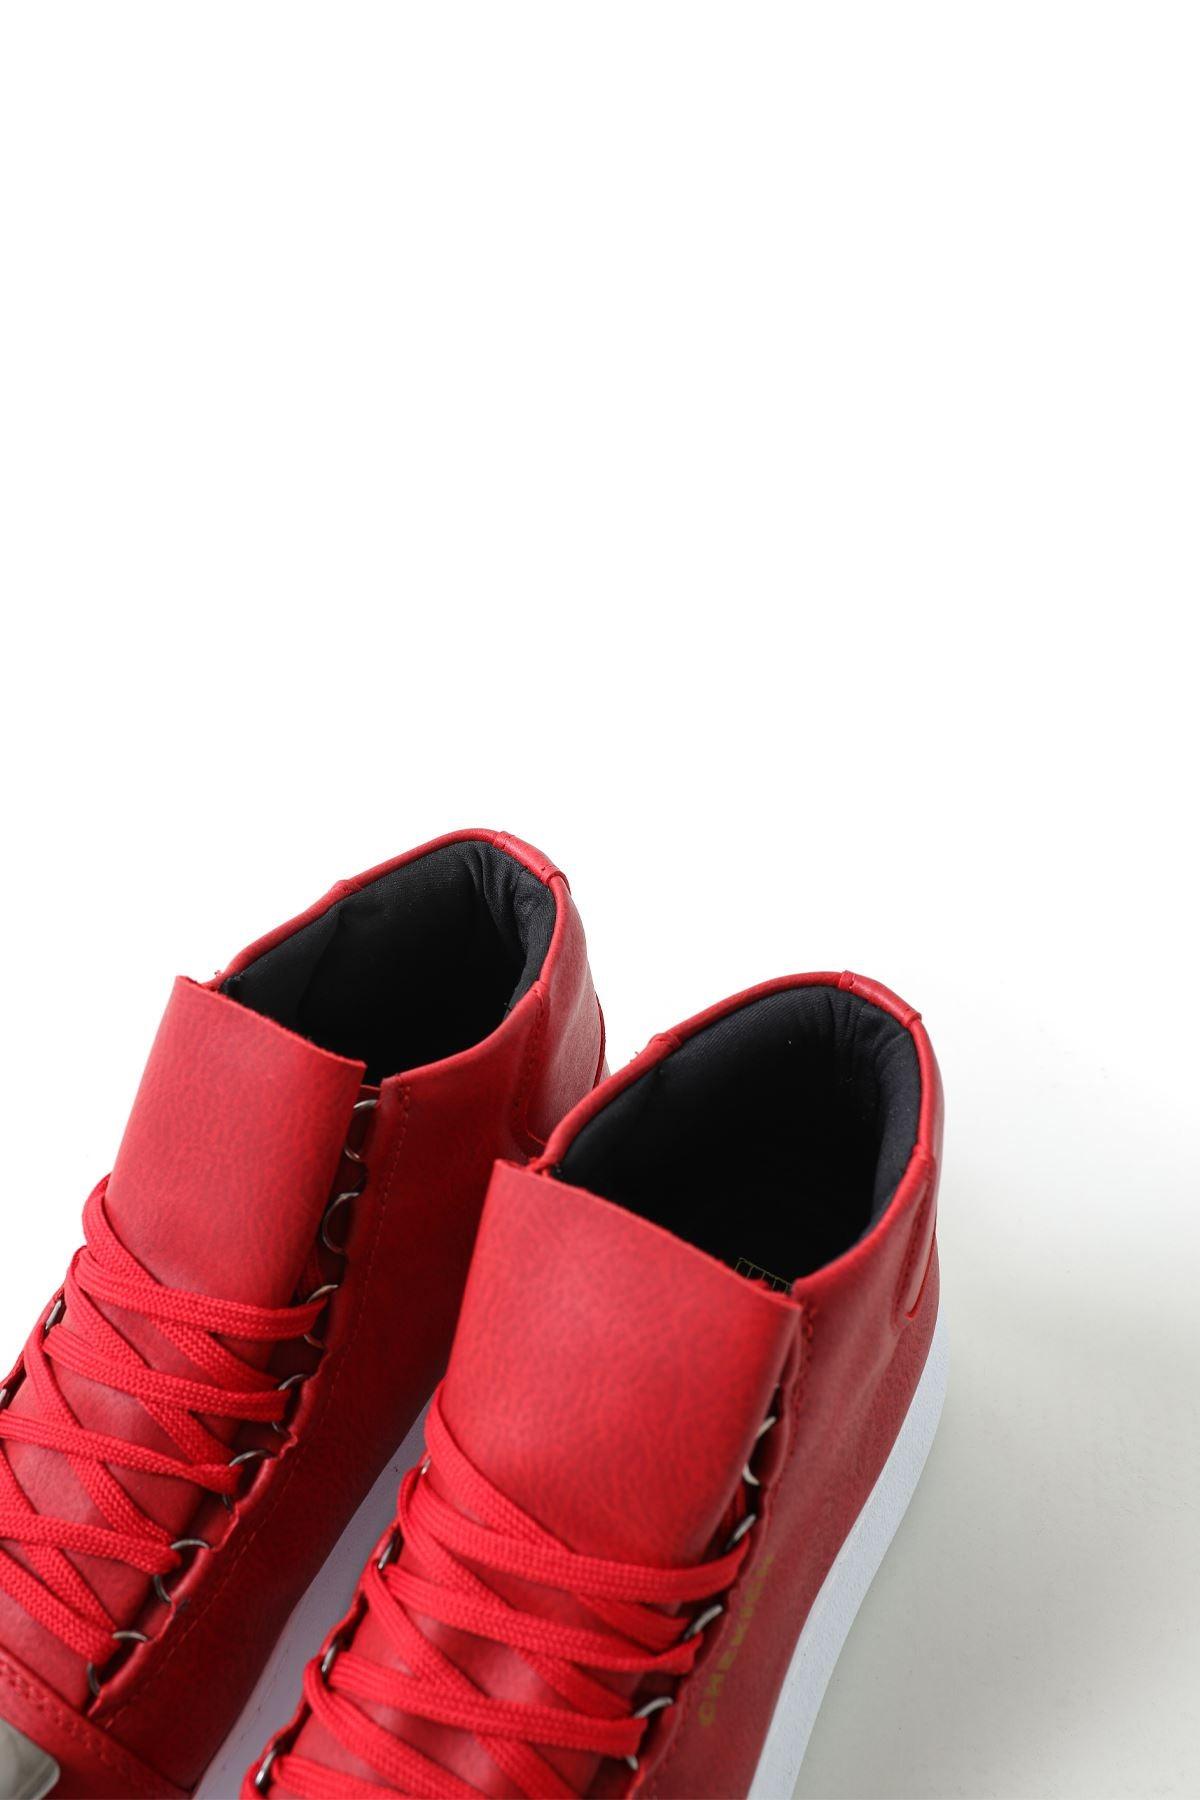 CH267 BT Men's Sneaker Boots - STREET MODE ™